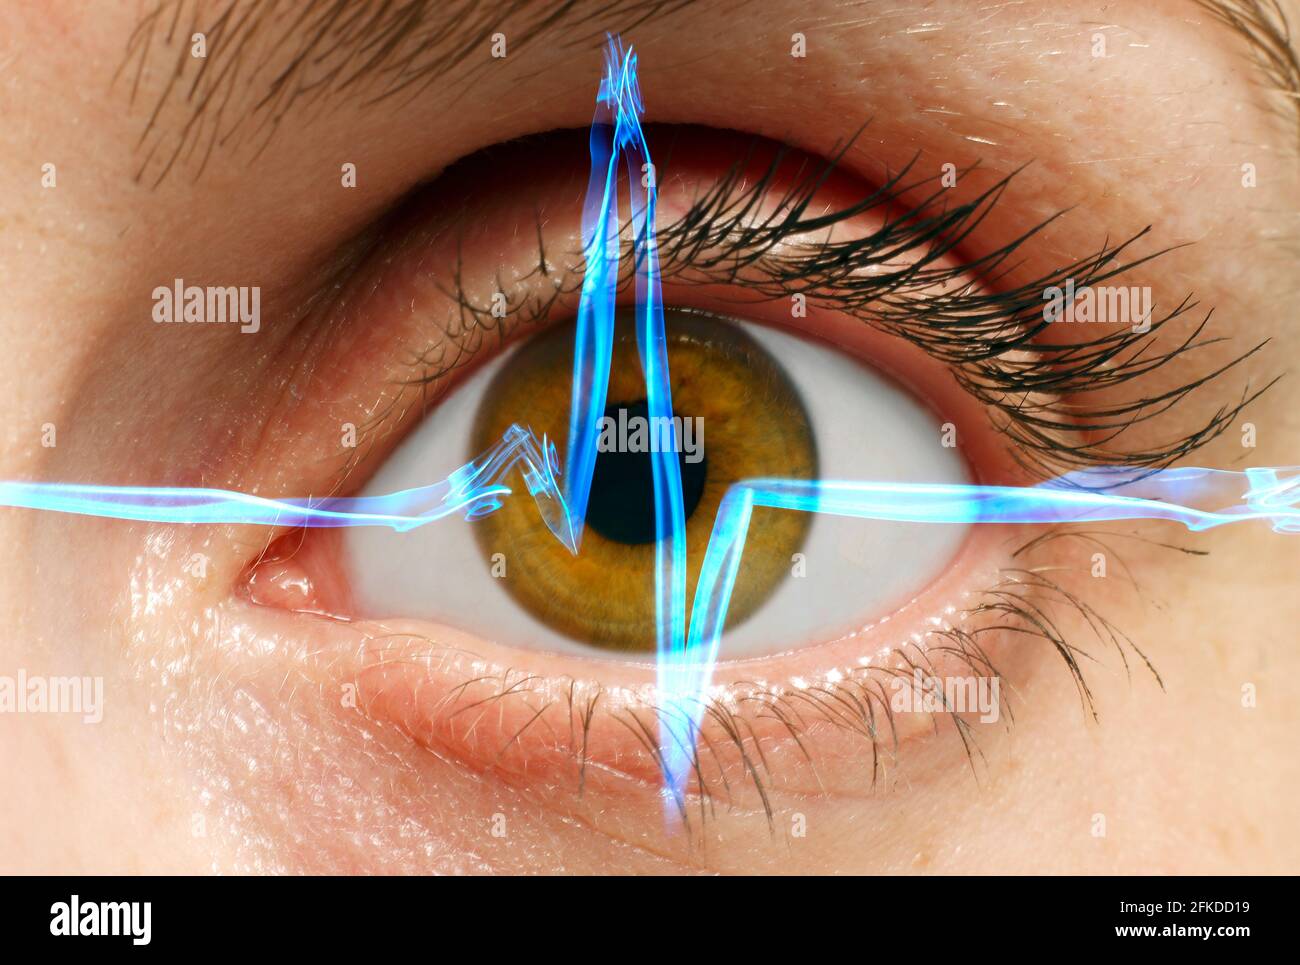 Menschliches Auge und Elektrokardiogramm, konzeptuelles Kompositbild Stockfoto